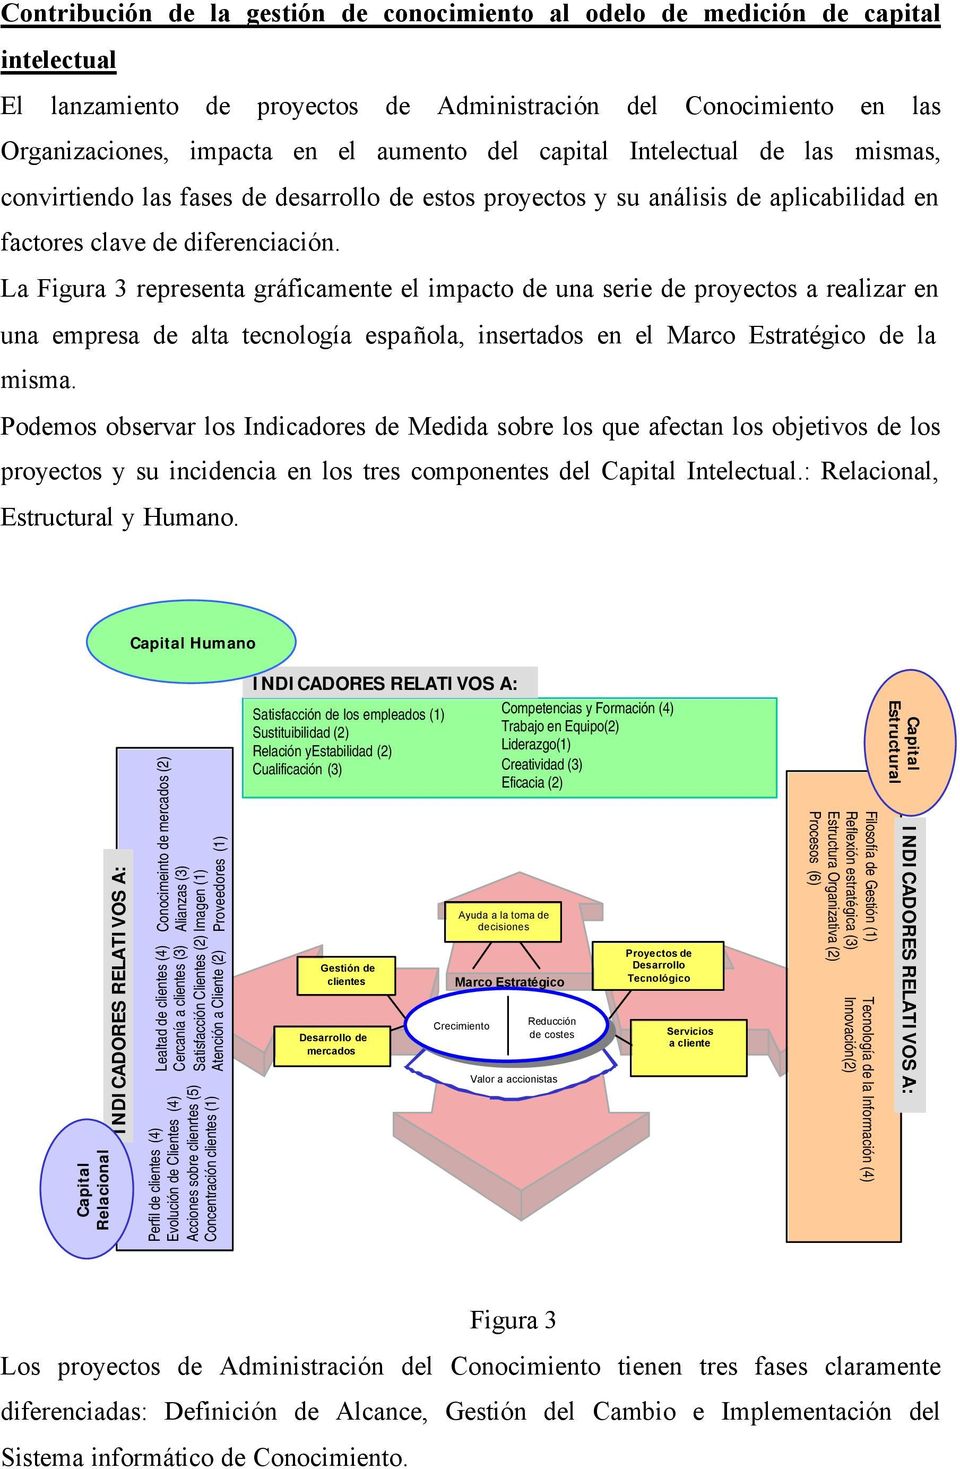 La Figura 3 representa gráficamente el impacto de una serie de proyectos a realizar en una empresa de alta tecnología española, insertados en el Marco Estratégico de la misma.